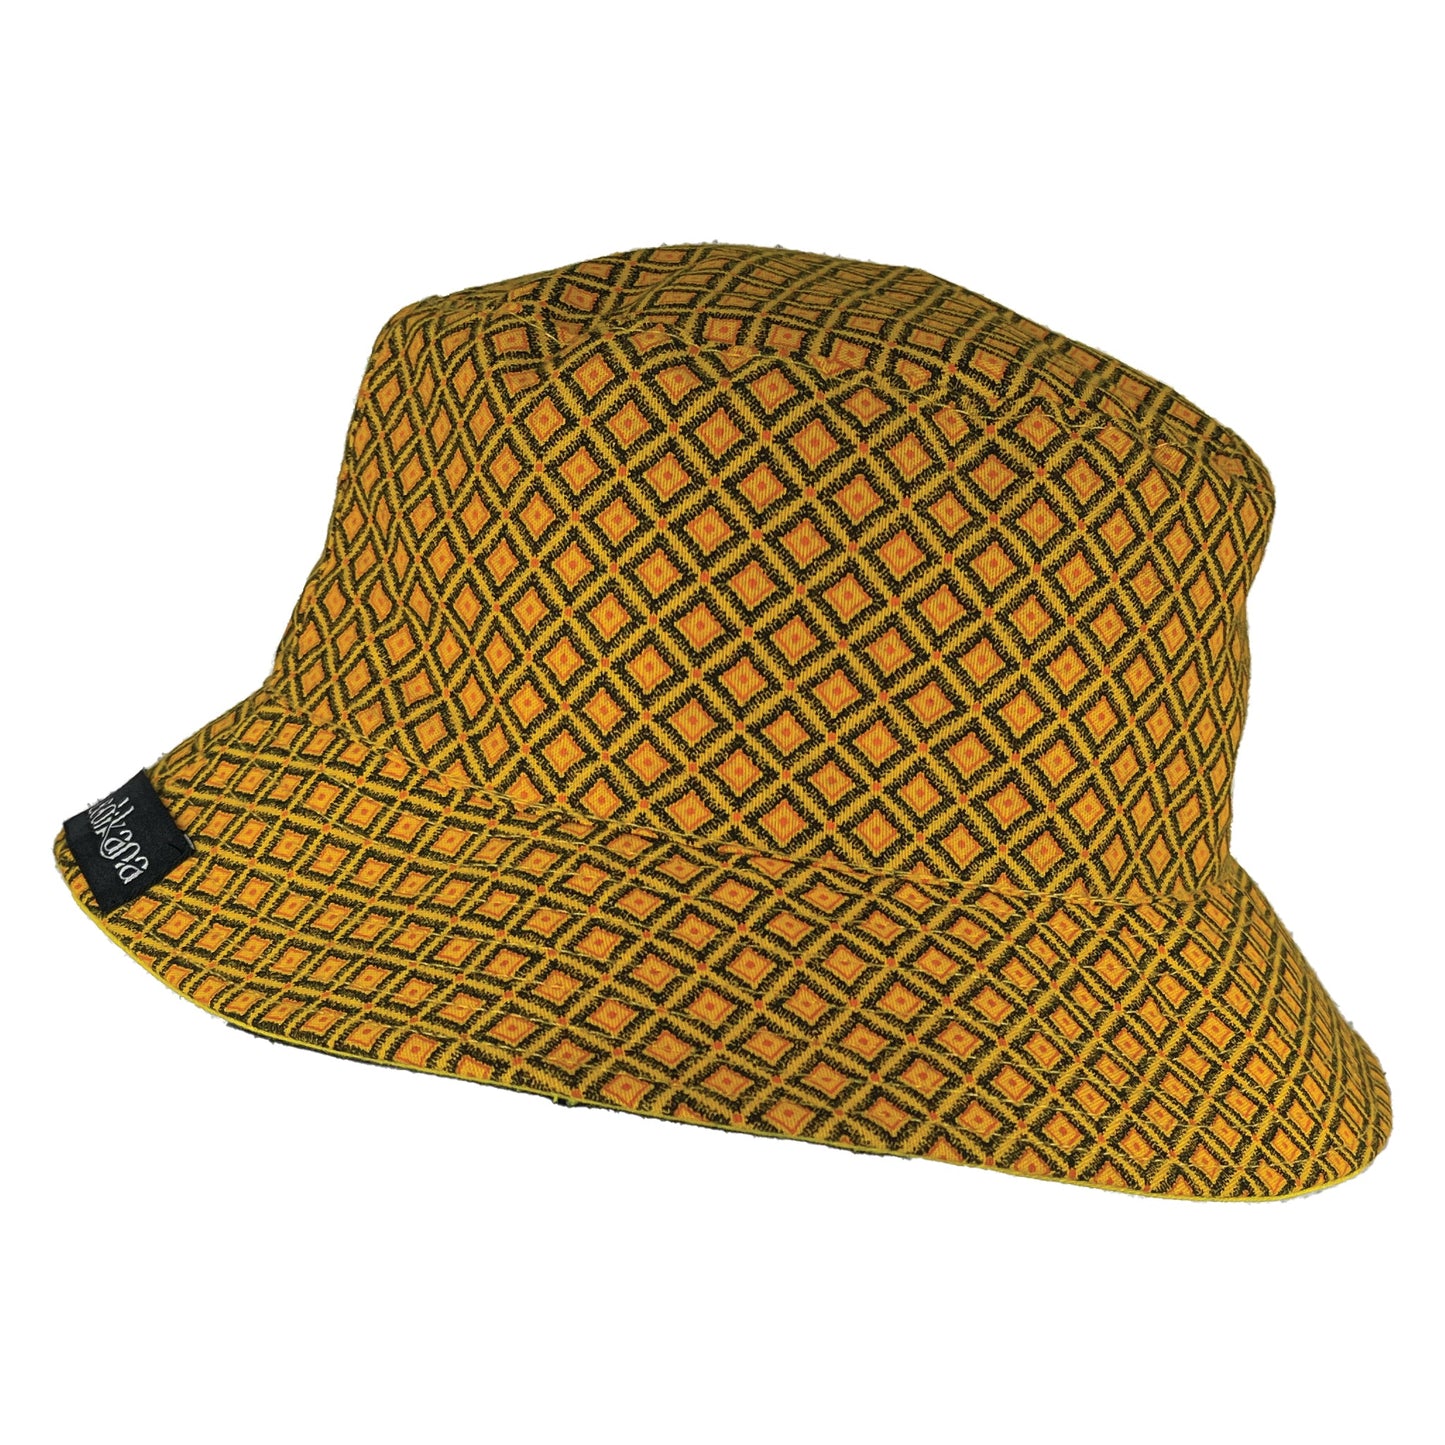 Shweshwe Bucket hats